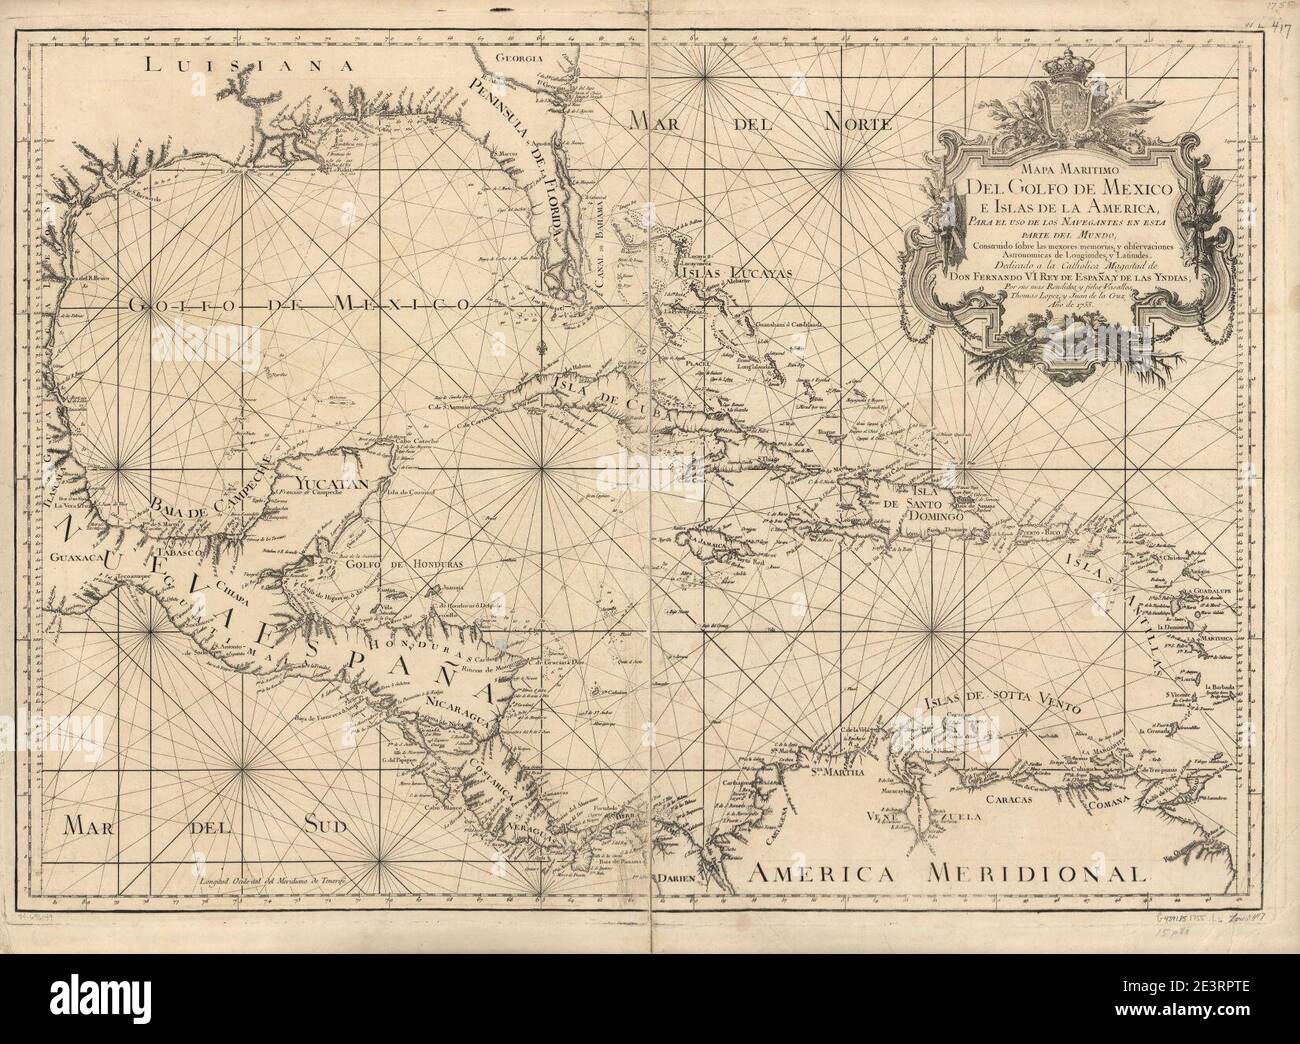 Mapa maritimo del Golfo de Mexico e islas de la America, para el uso de los navegantes en esta parte del mundo, construido sobre las mexores memorias, y observaciones astronomicas de longitudes, y Stock Photo